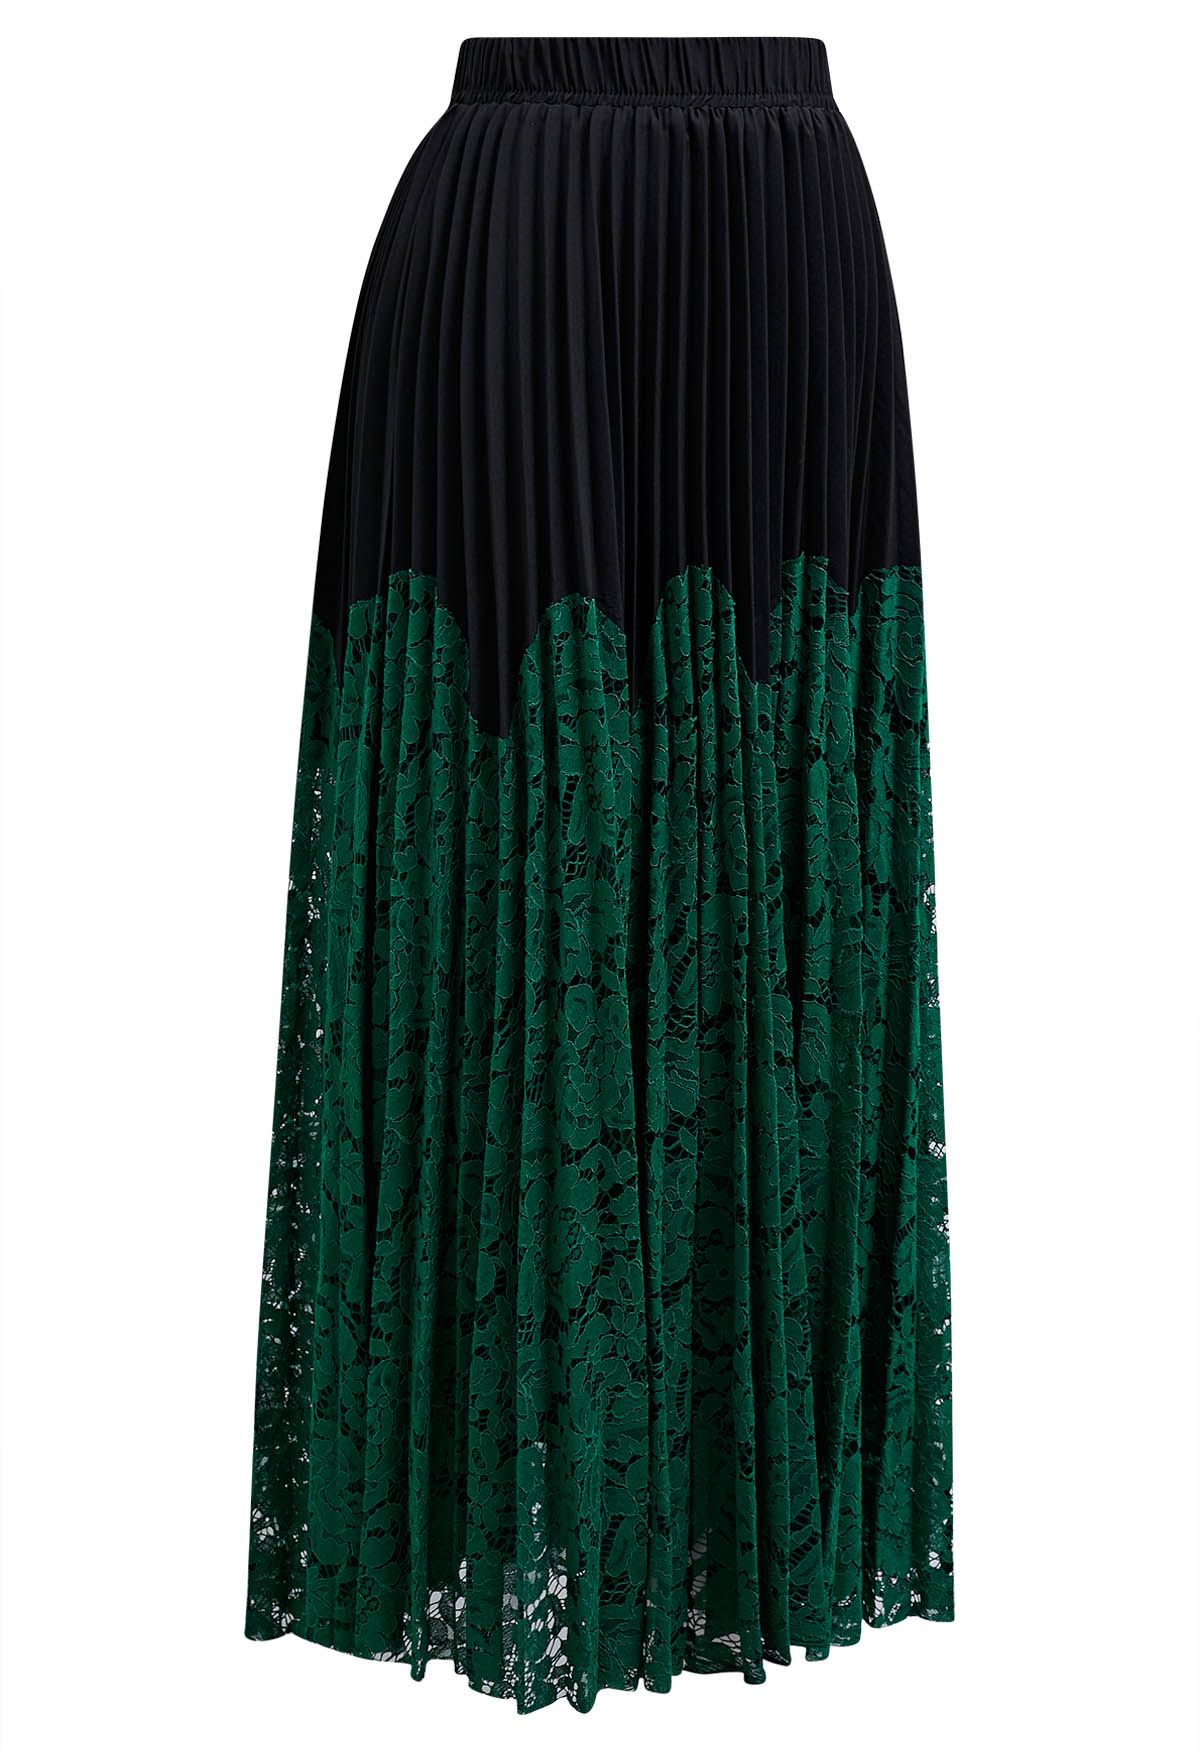 Falda larga plisada con encaje floral en verde oscuro